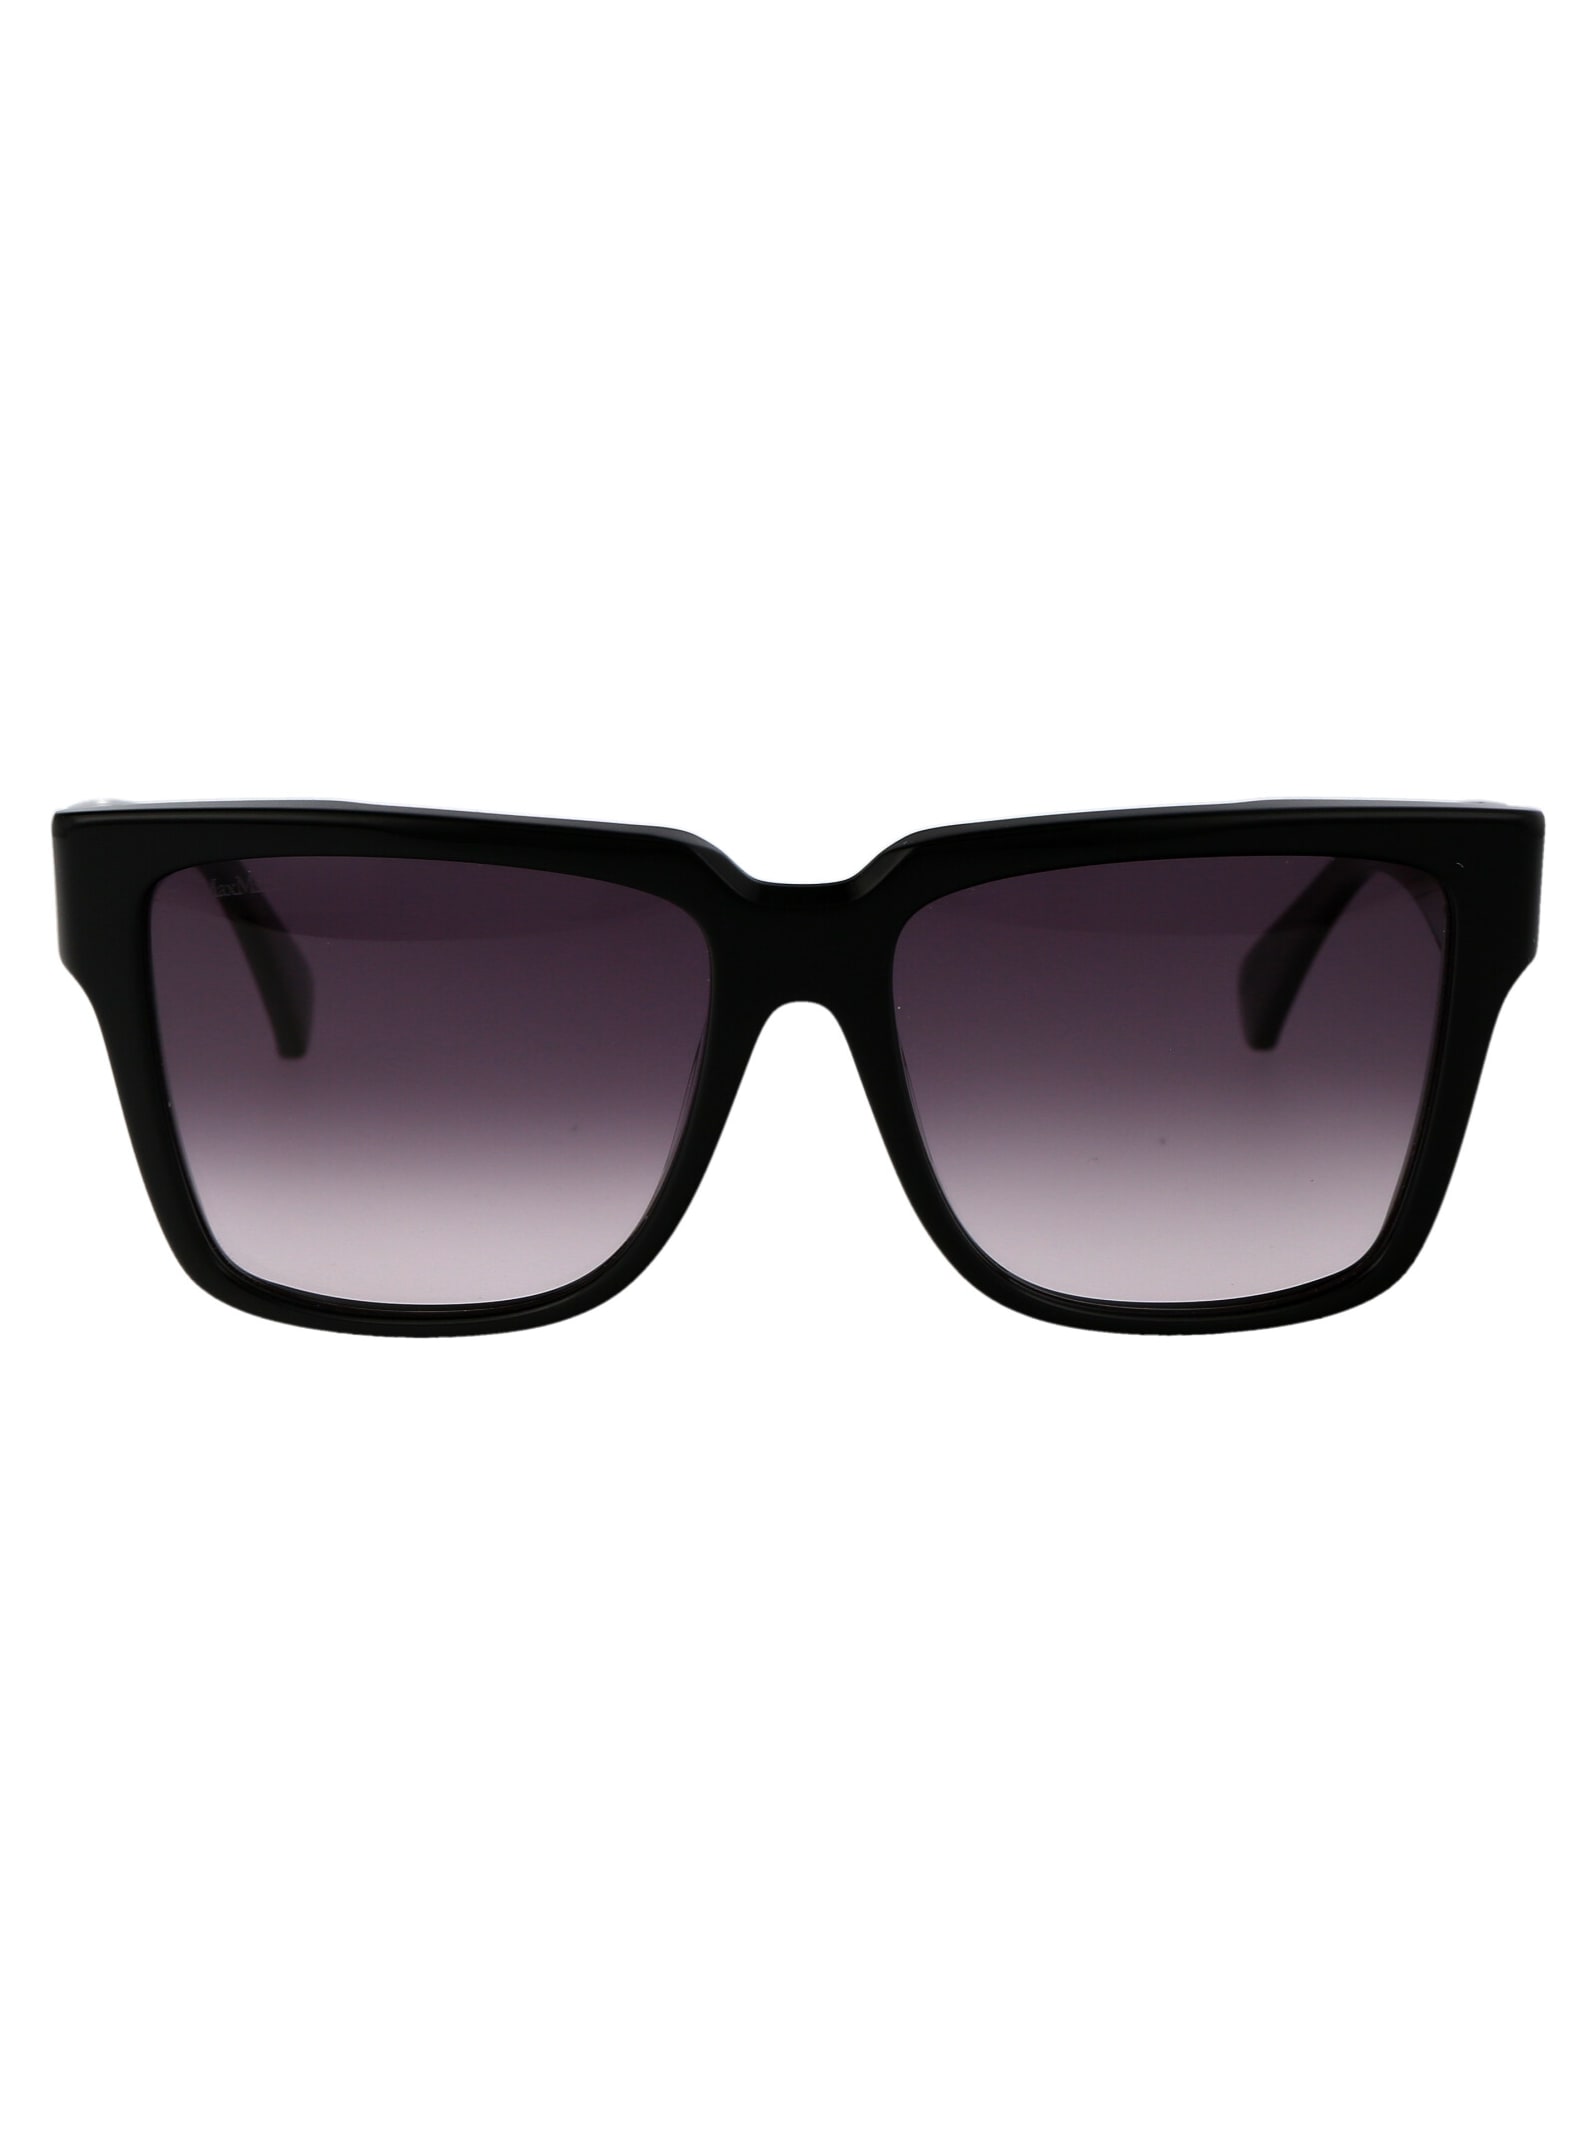 Shop Max Mara Glimpse2 Sunglasses In 01b Nero Lucido/fumo Grad